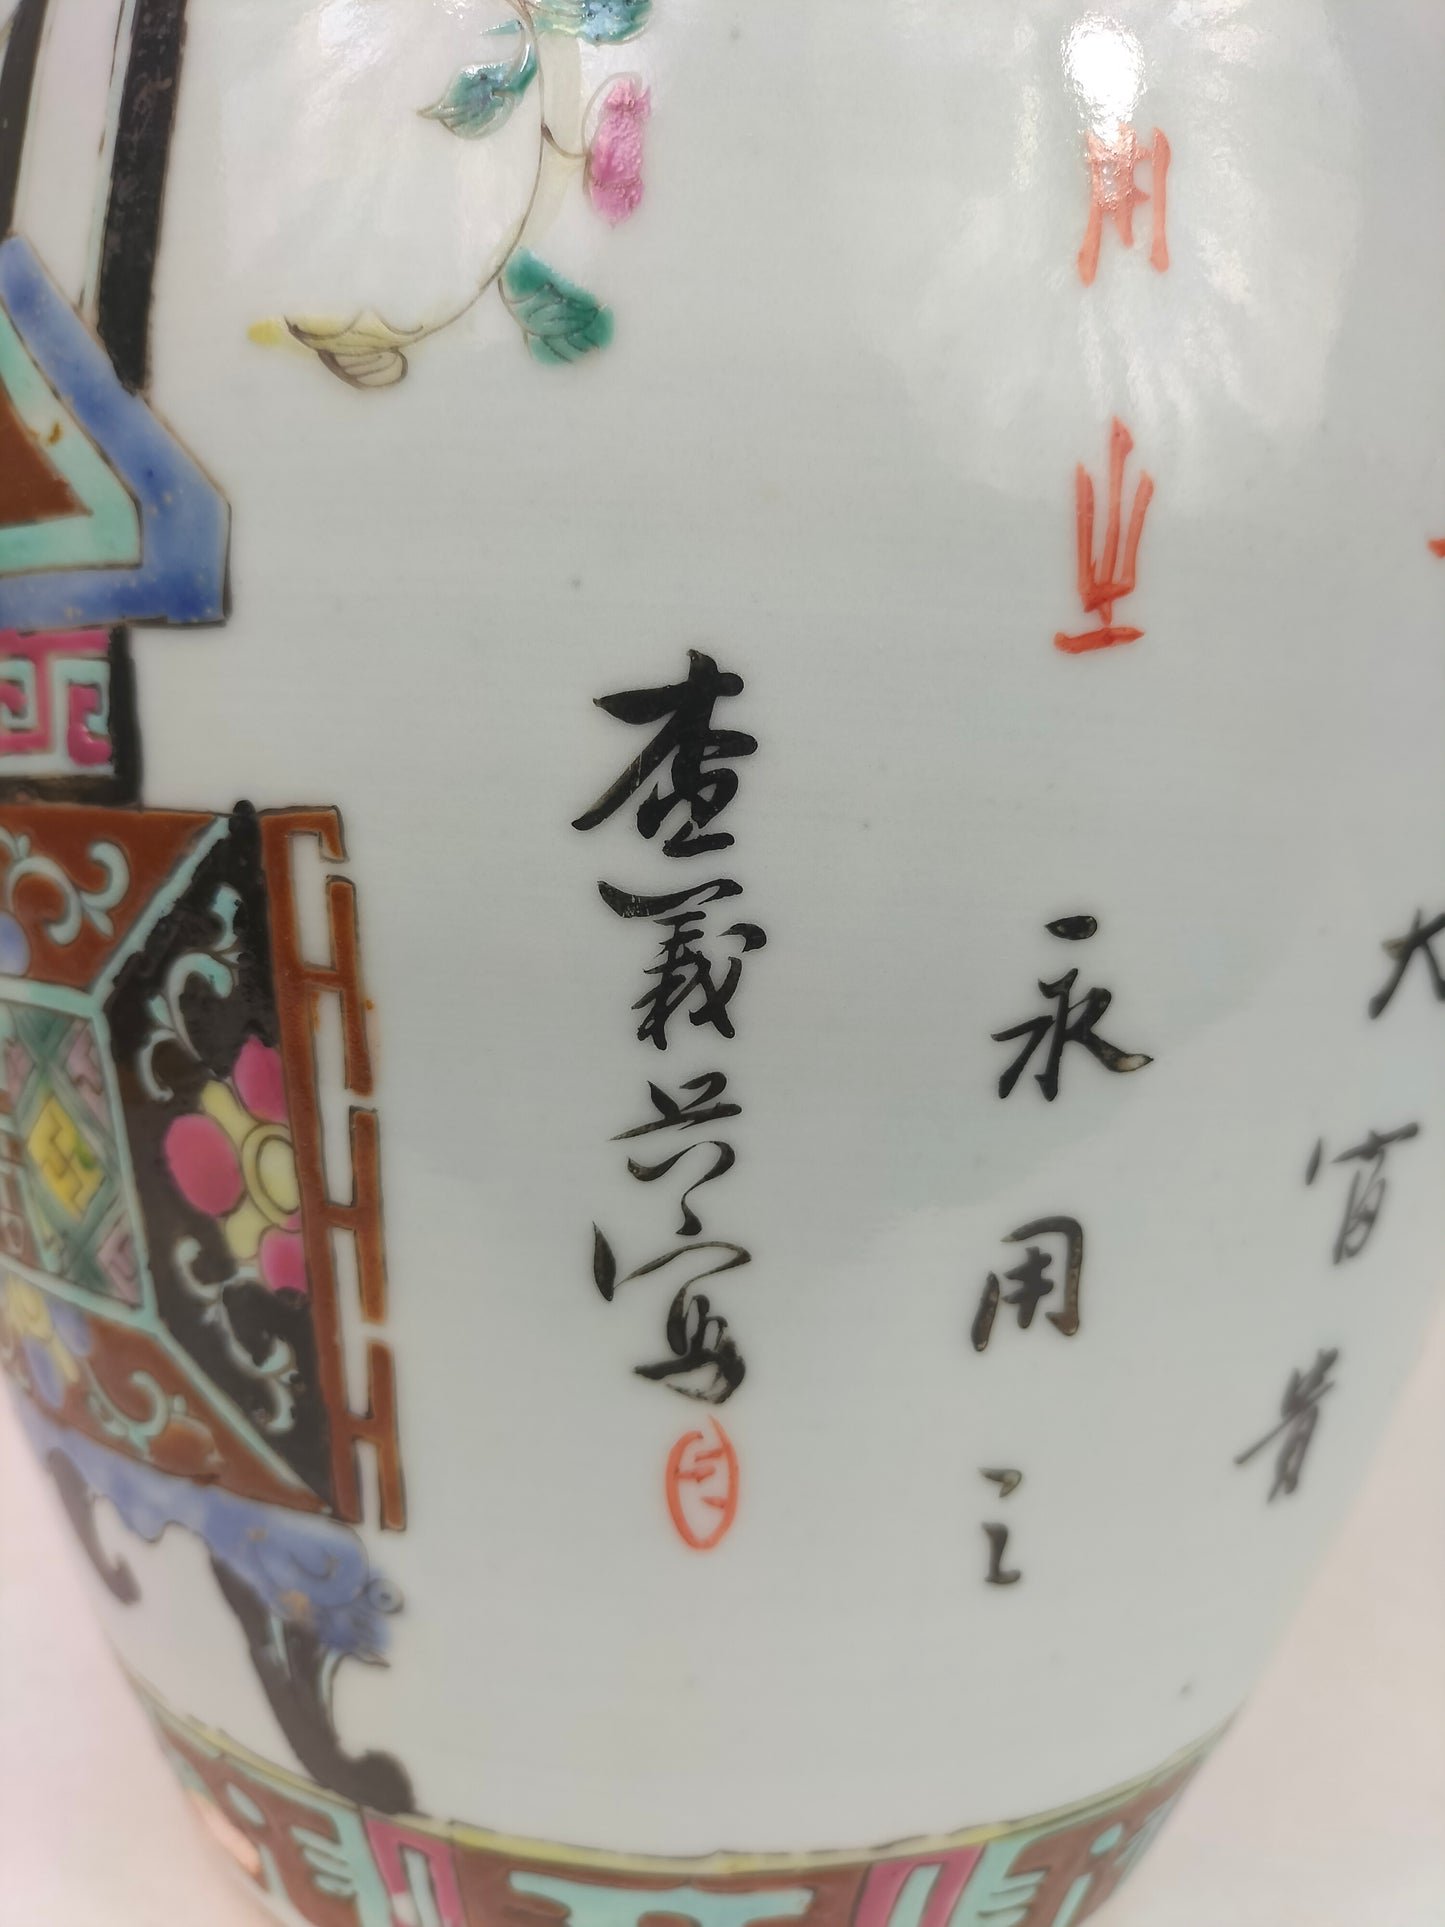 古董中国粉彩姜罐装饰花篮 // 清朝 - 19 世纪